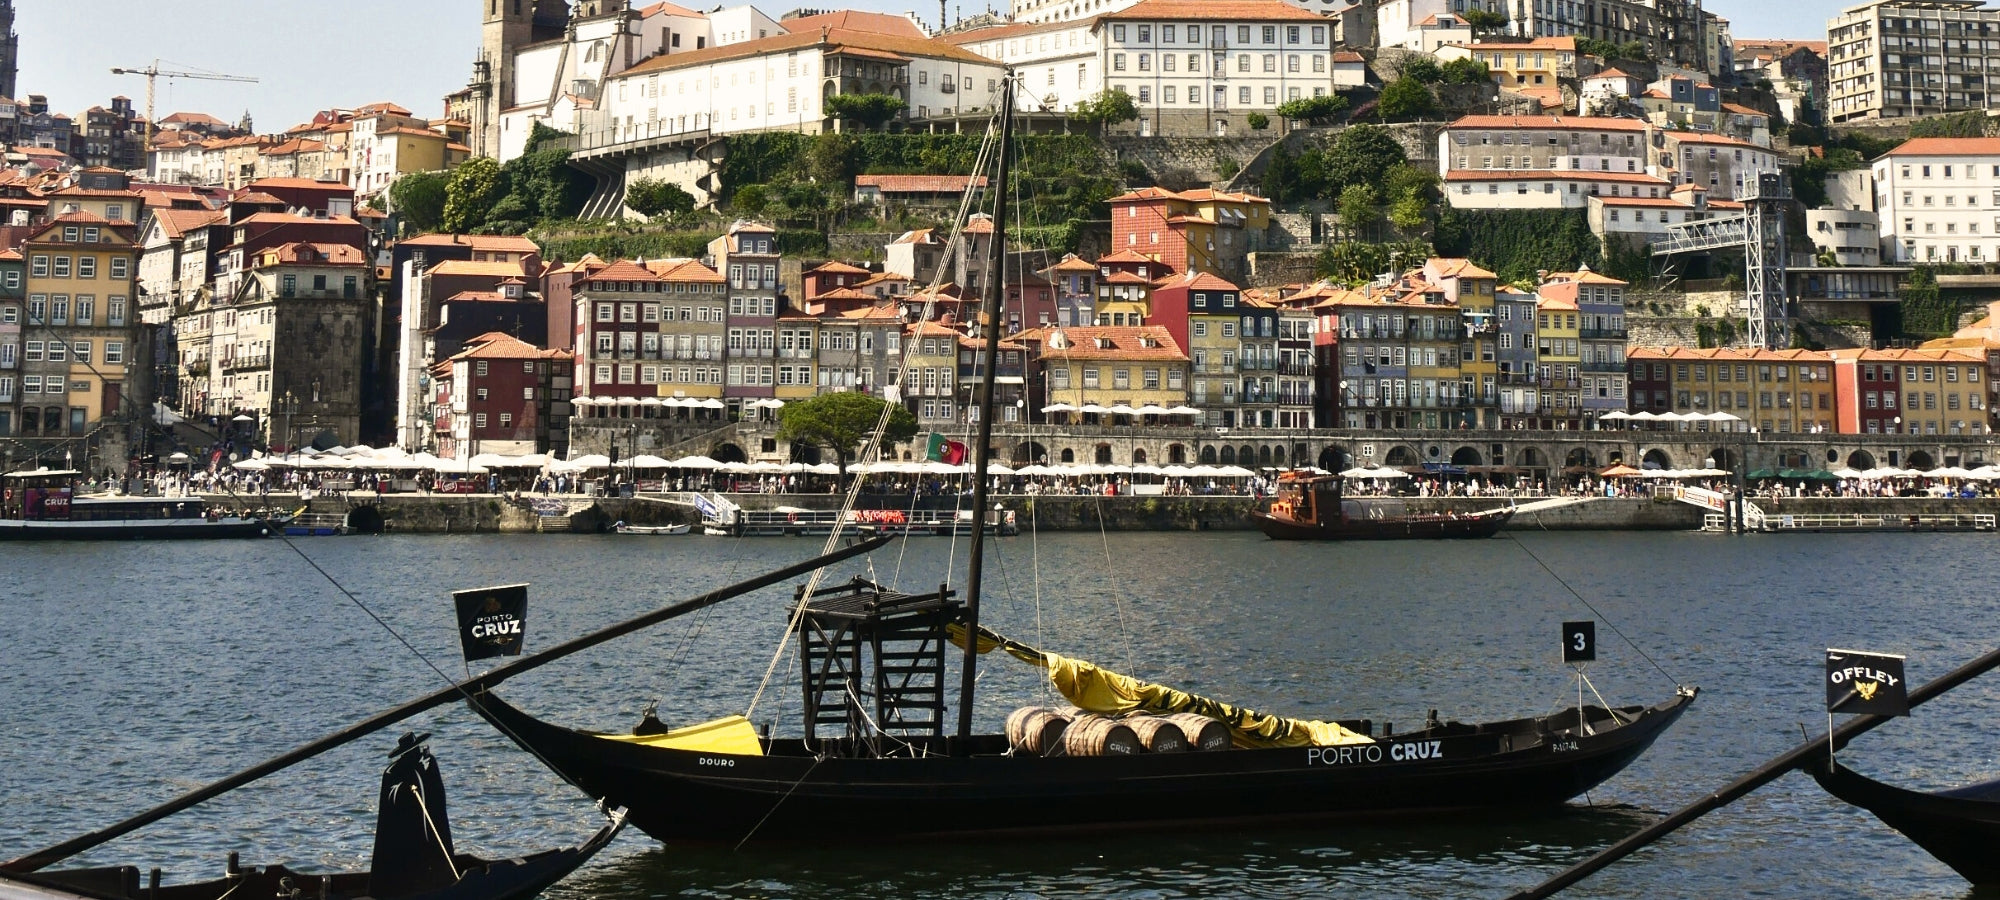 Beschreibung des Bildes: Der majestätische Douro-Fluss fließt durch eine atemberaubende Landschaft. Auf dem ruhigen Wasser sind alte Barken zu sehen, beladen mit traditionellen Portweinfässern. Die Sonne taucht die Szene in warmes Licht und lässt die Spiegelung der Boote auf dem Fluss glänzen. Ein malerischer Anblick, der die zeitlose Schönheit und die reiche Weintradition des Douro-Tals widerspiegelt.